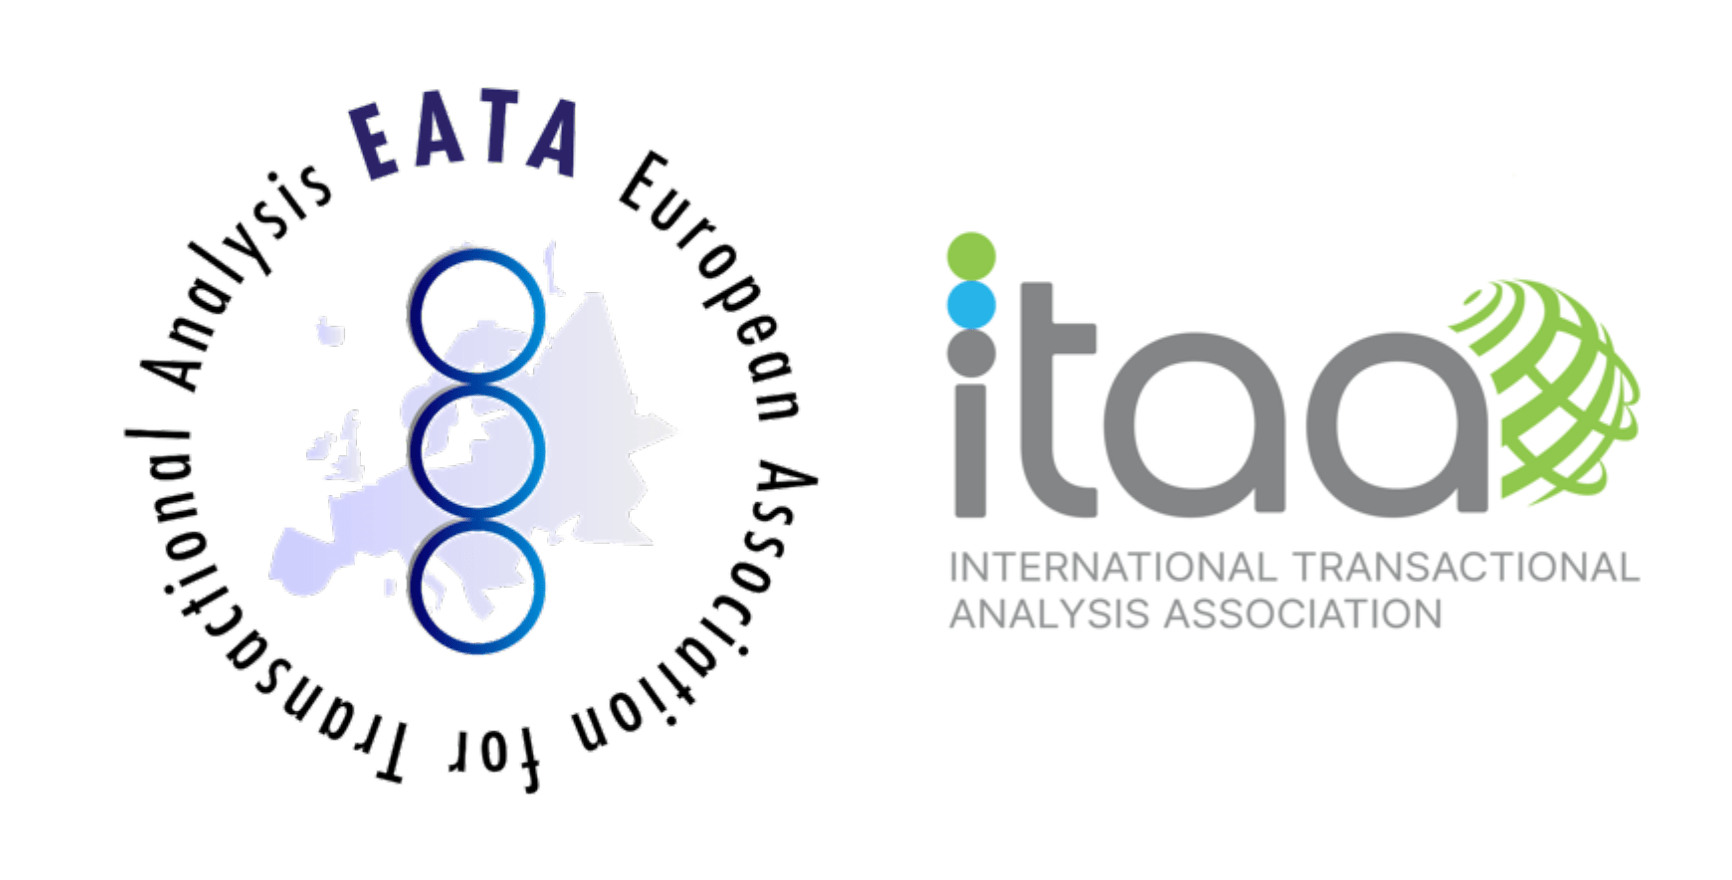 EATA-itaa-logos